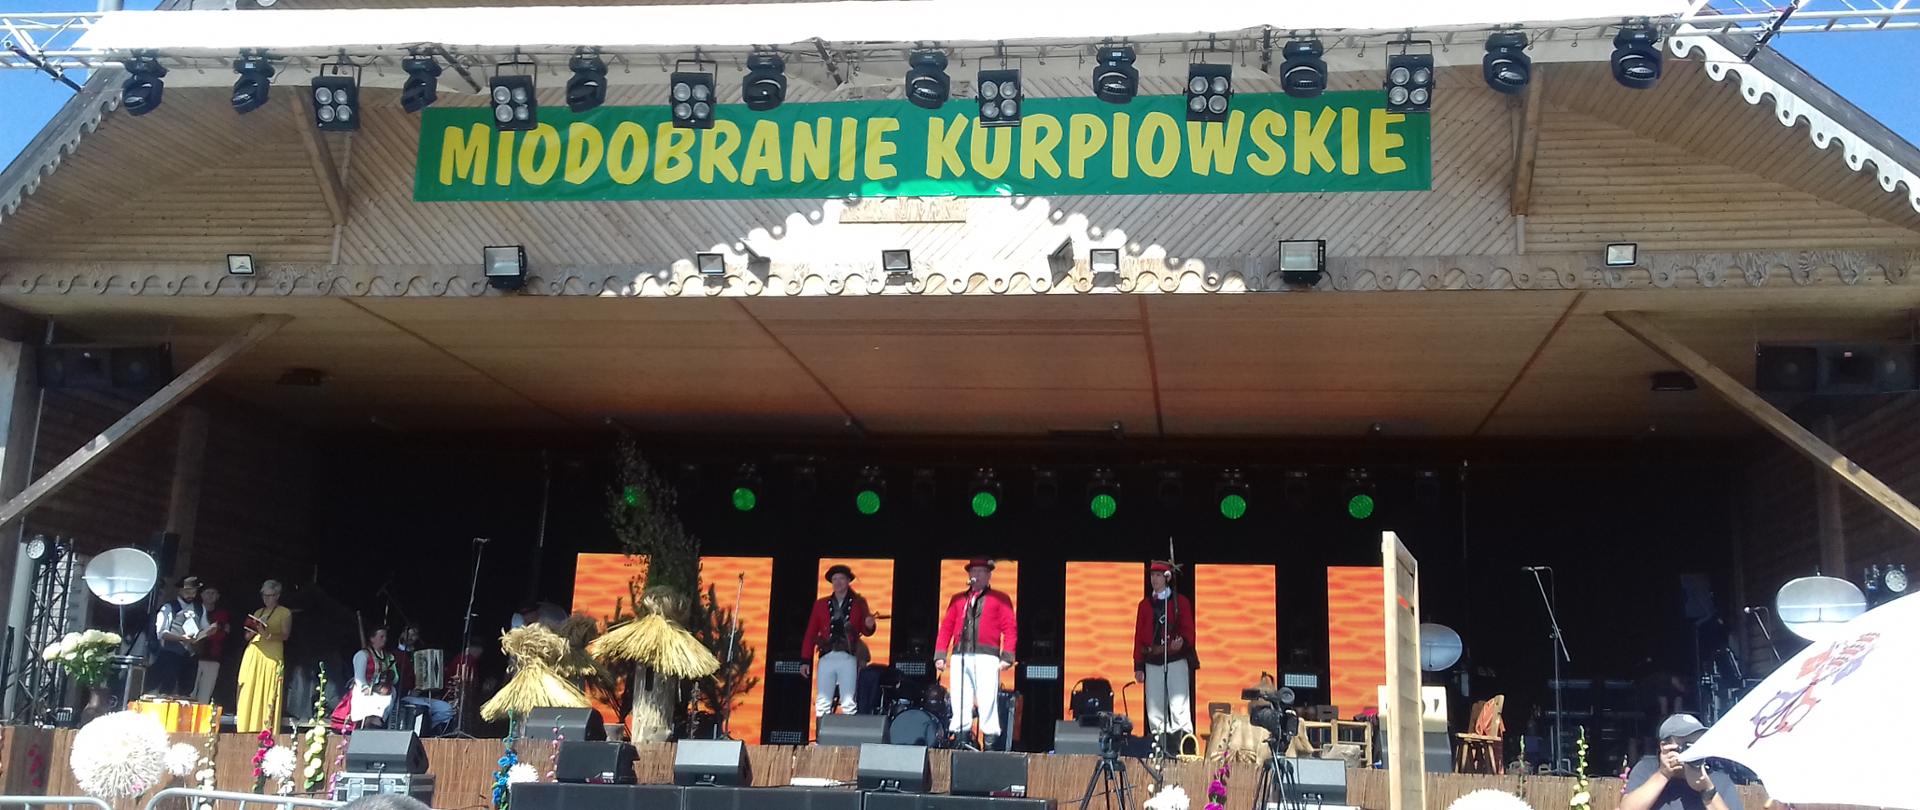 Występy sceniczne zespołu ludowego podczas 42. Kurpiowskiego Miodobrania w Wykrocie.